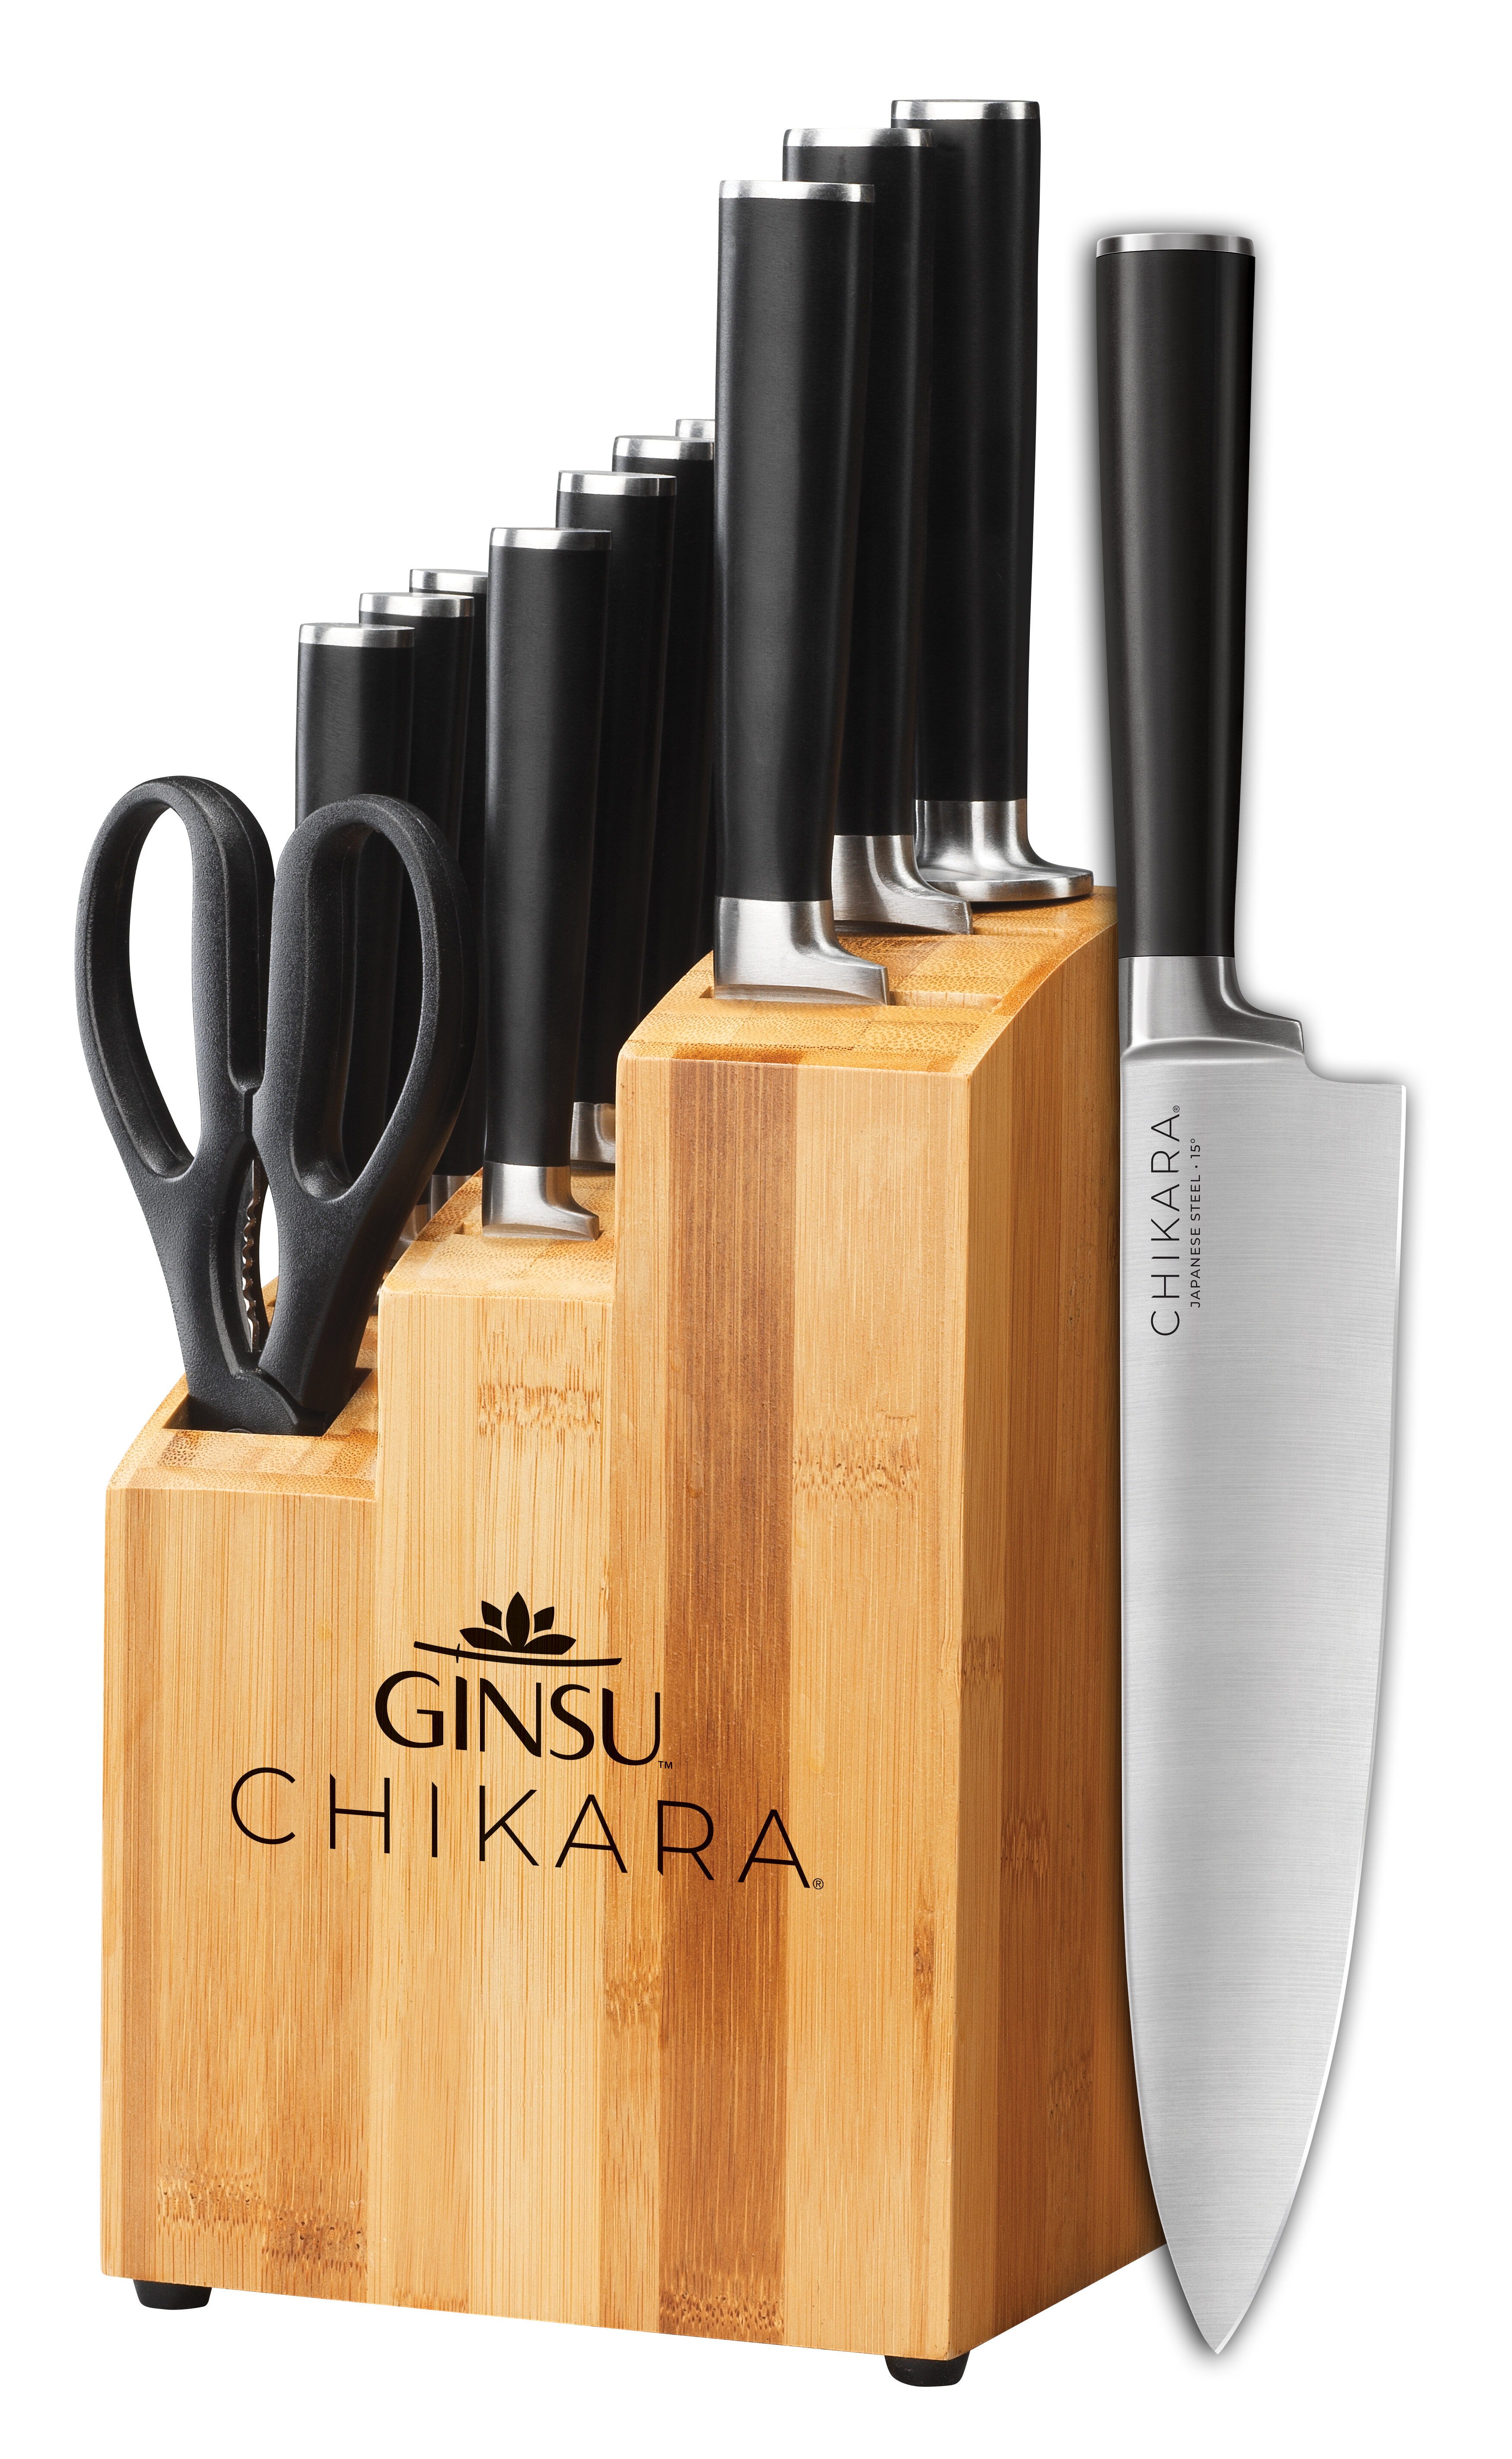 https://assets.wfcdn.com/im/91834804/compr-r85/1104/110415983/ginsu-chikara-series-12-piece-high-carbon-stainless-steel-knife-block-set.jpg